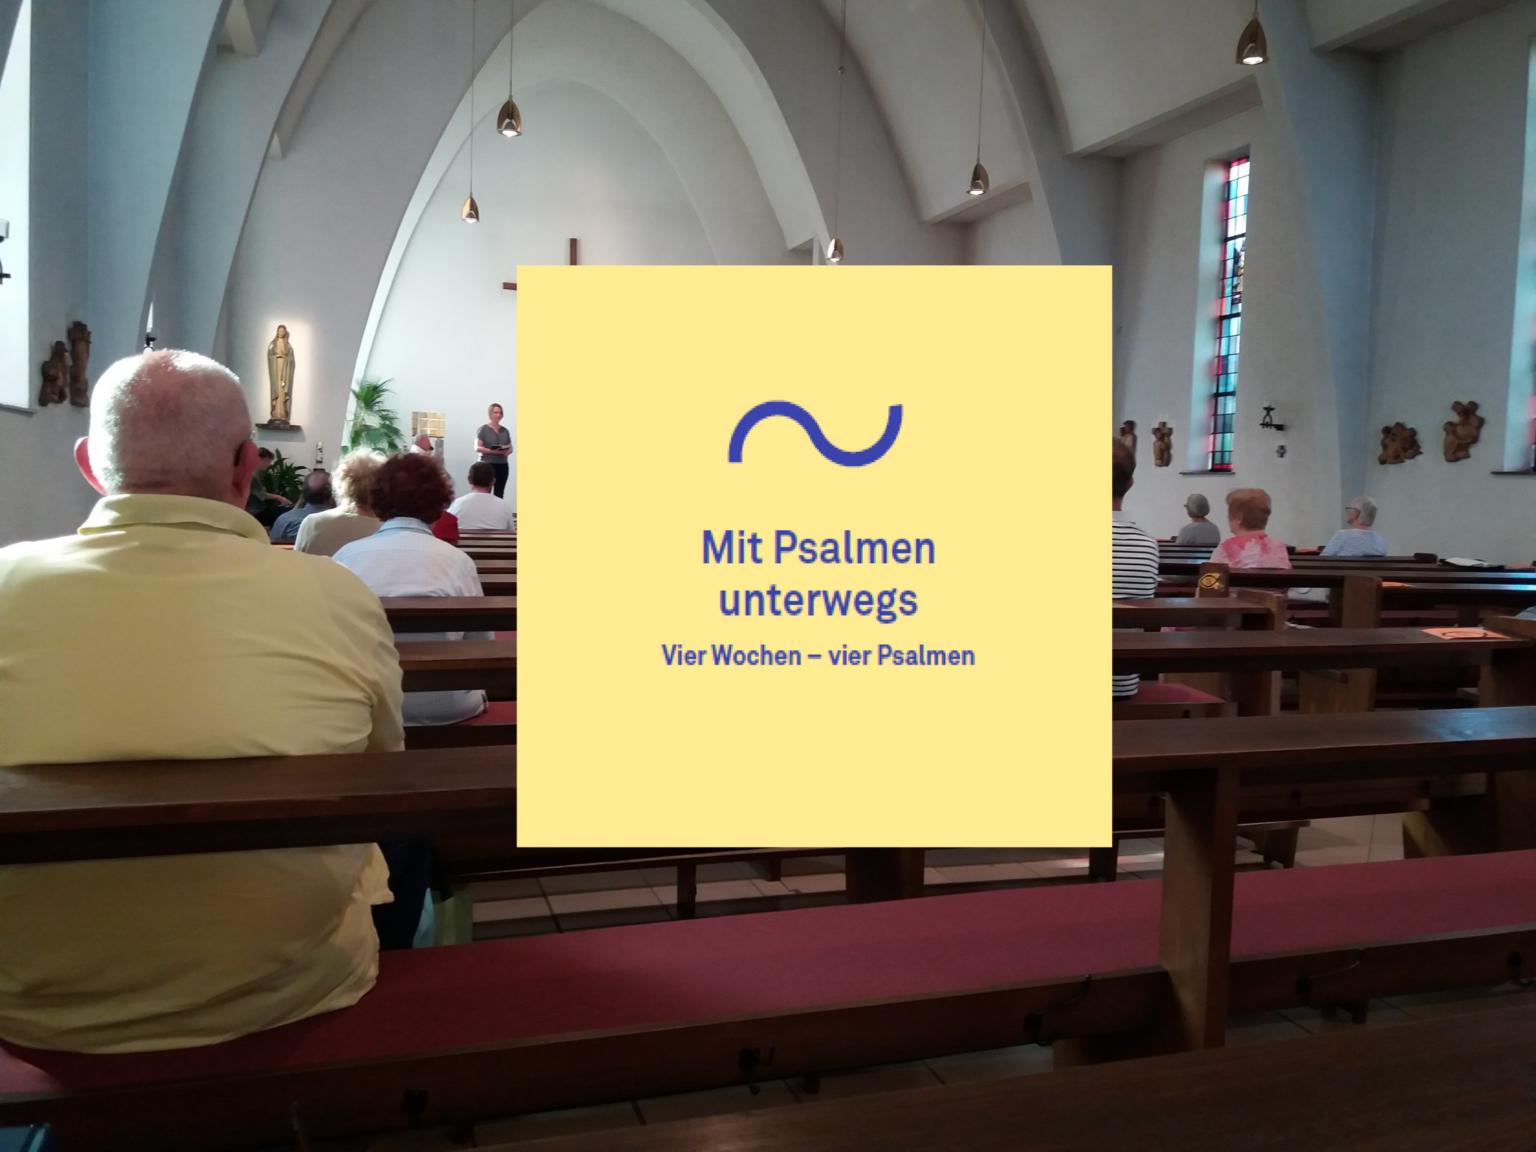 Vier Wochen - vier Psalmen (c) St. Marien Buseck / Bistum Mainz